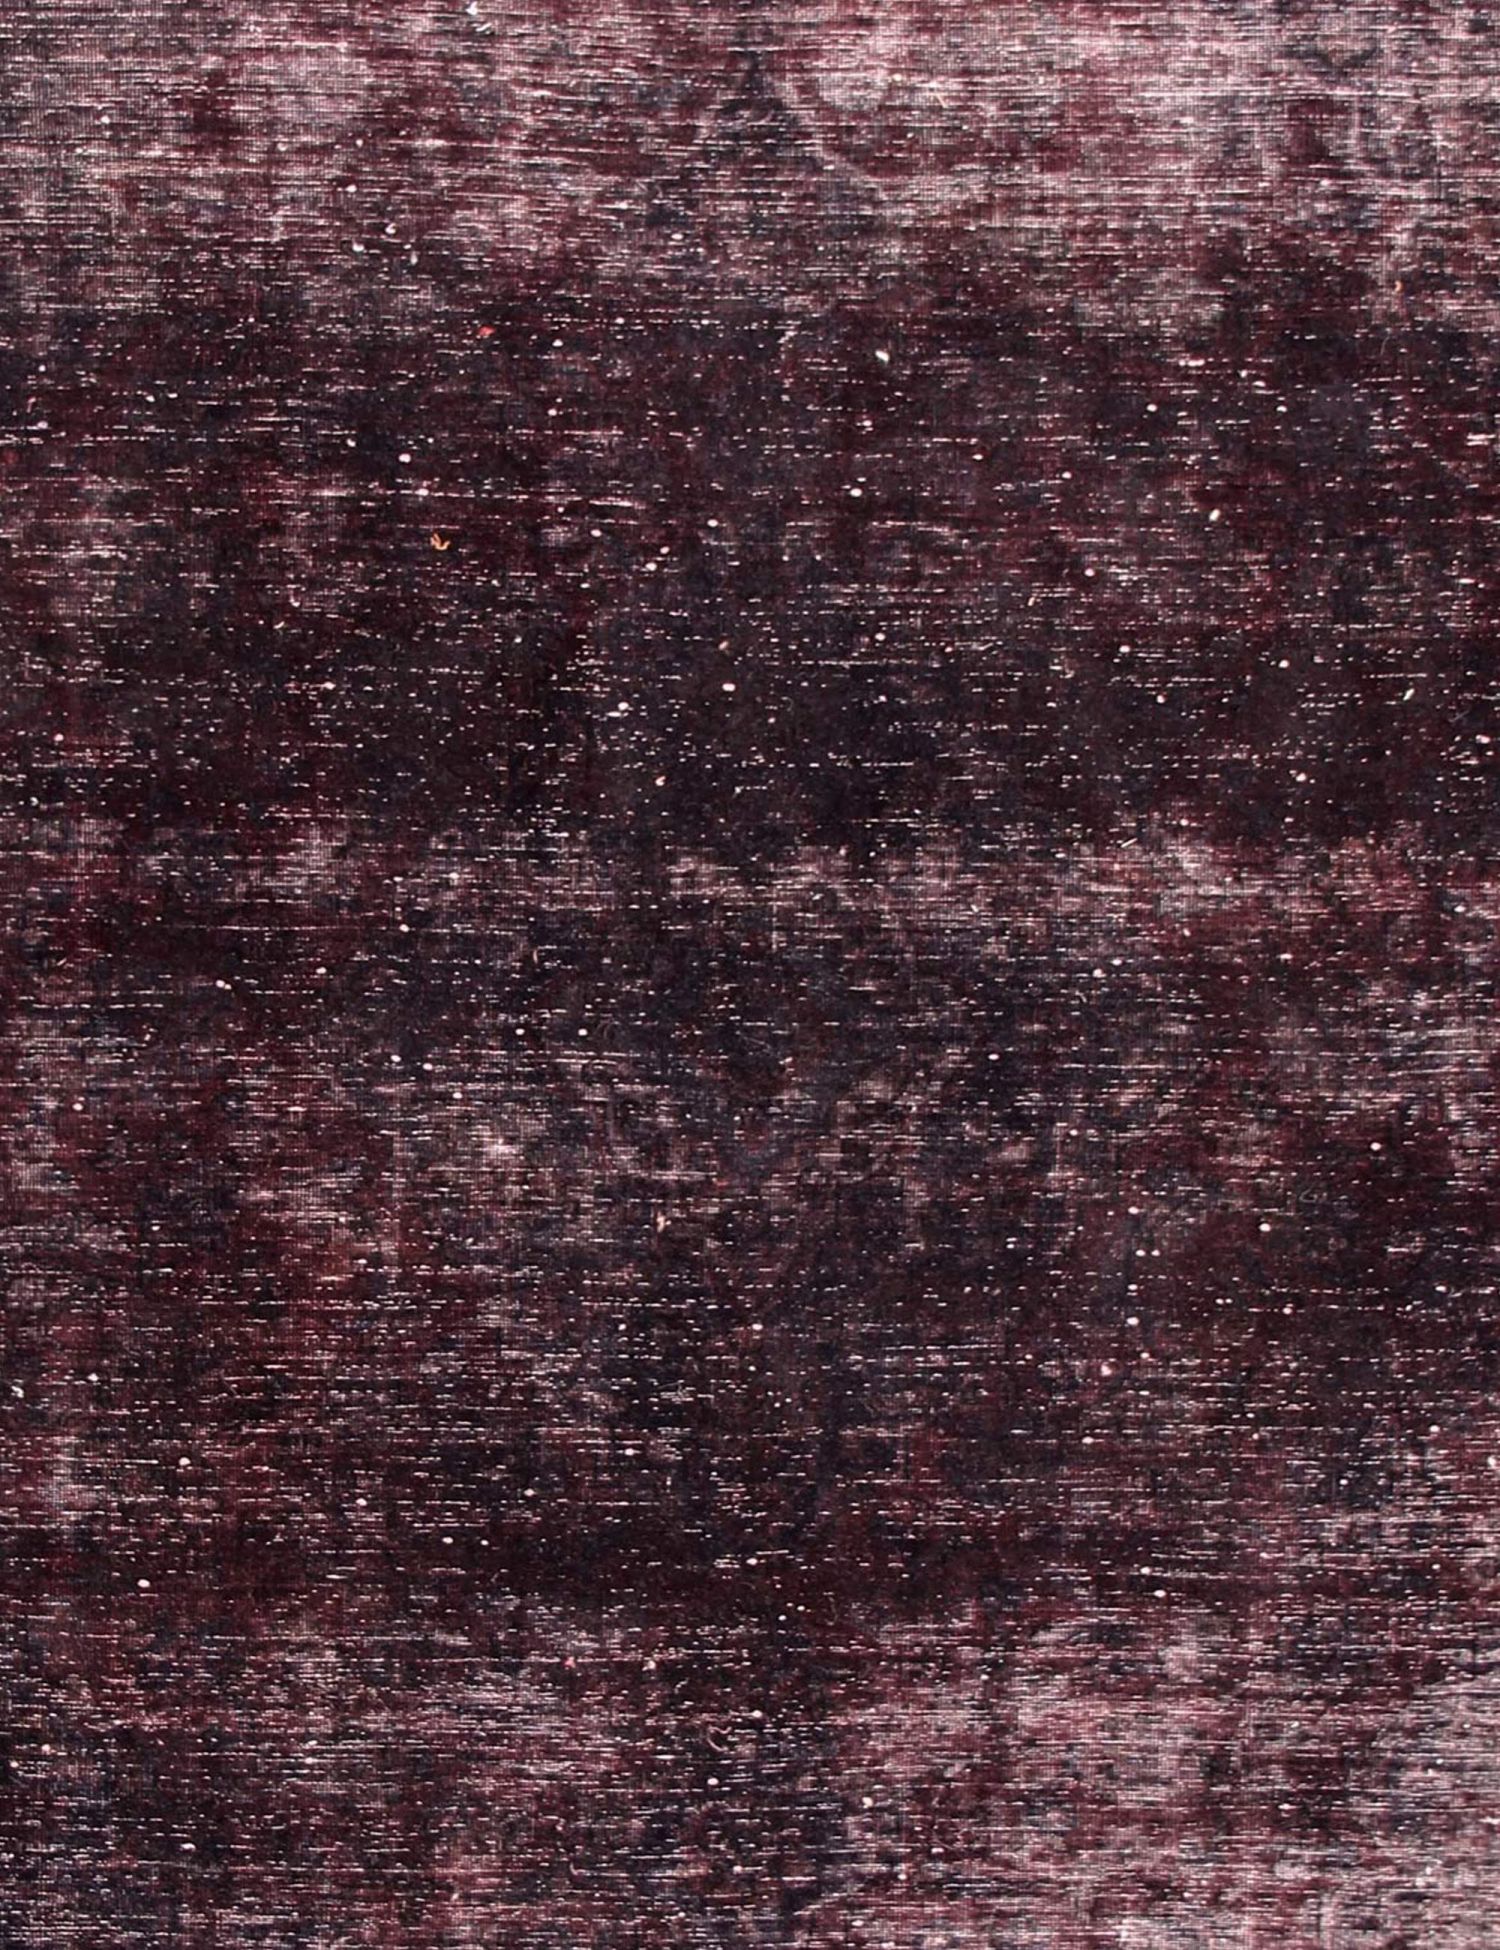 Persischer Vintage Teppich  schwarz <br/>203 x 203 cm